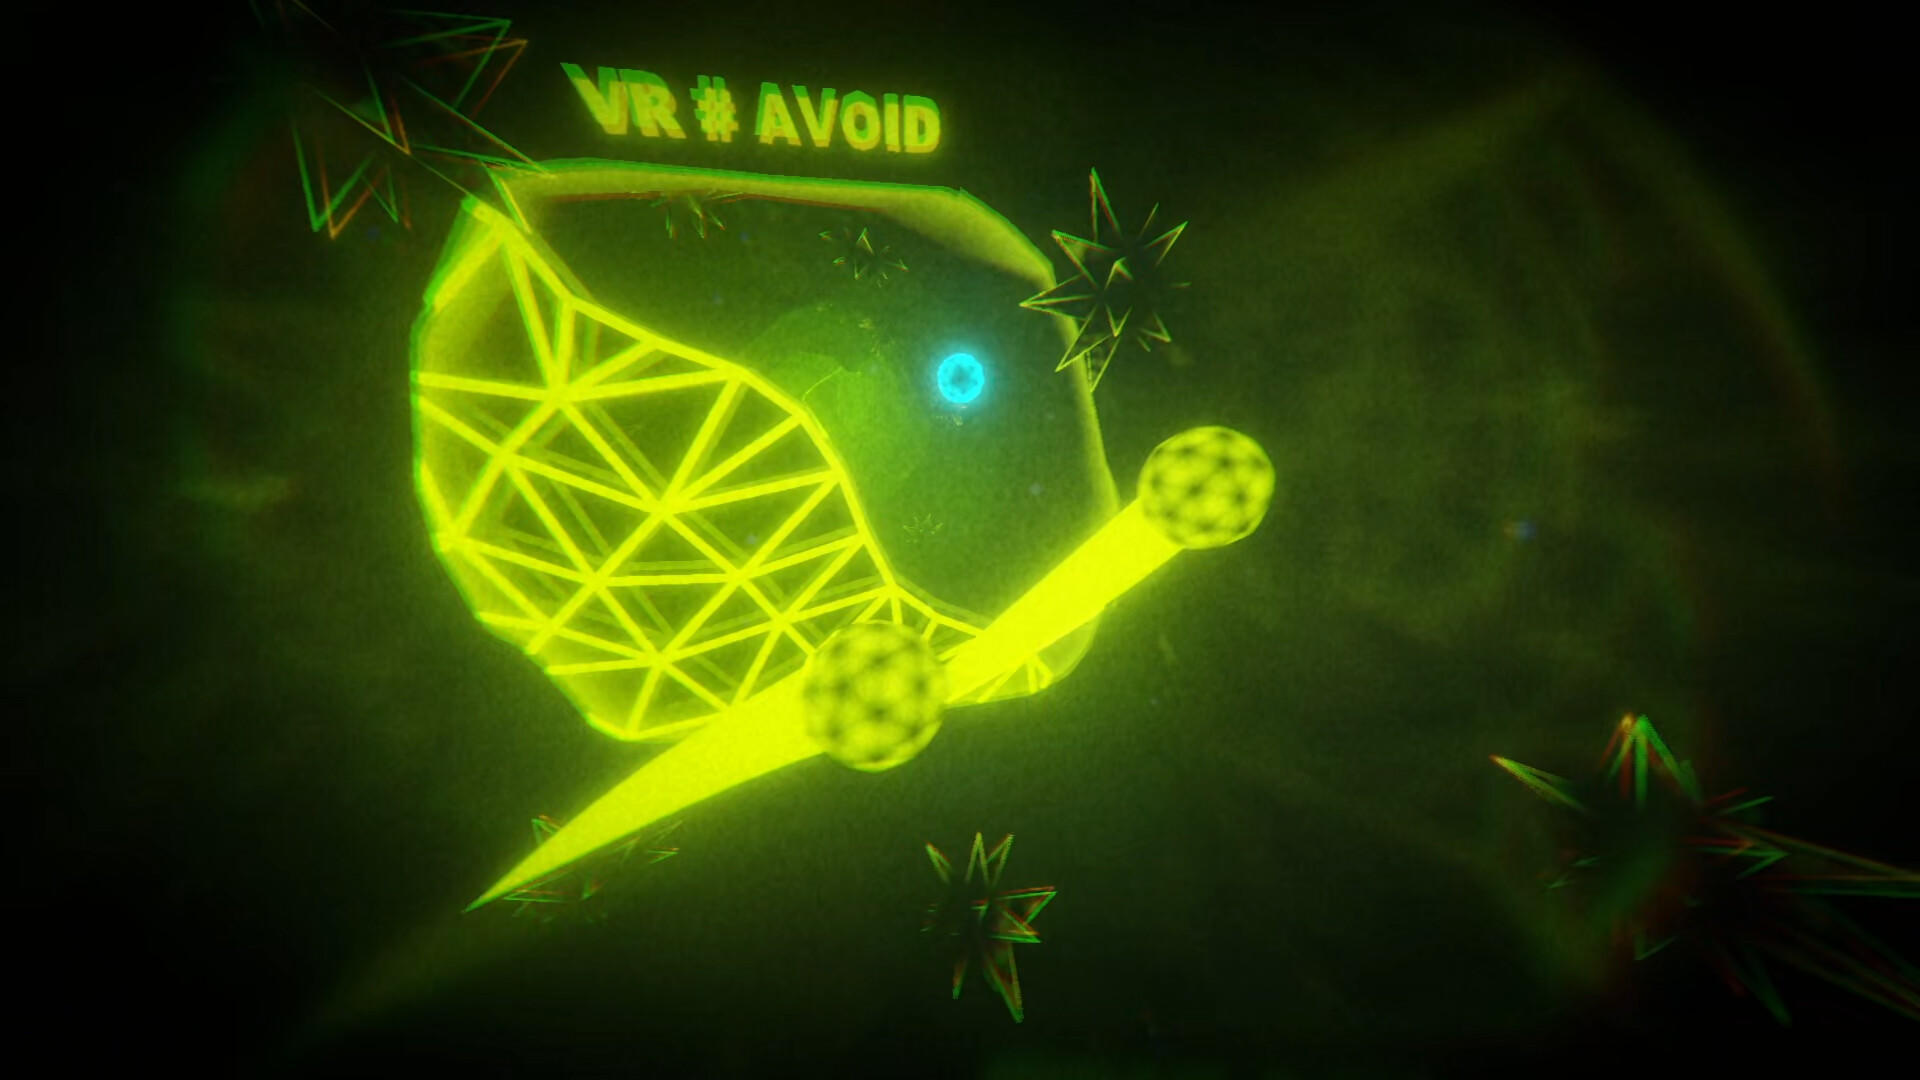 Screenshot of VR # AVOID